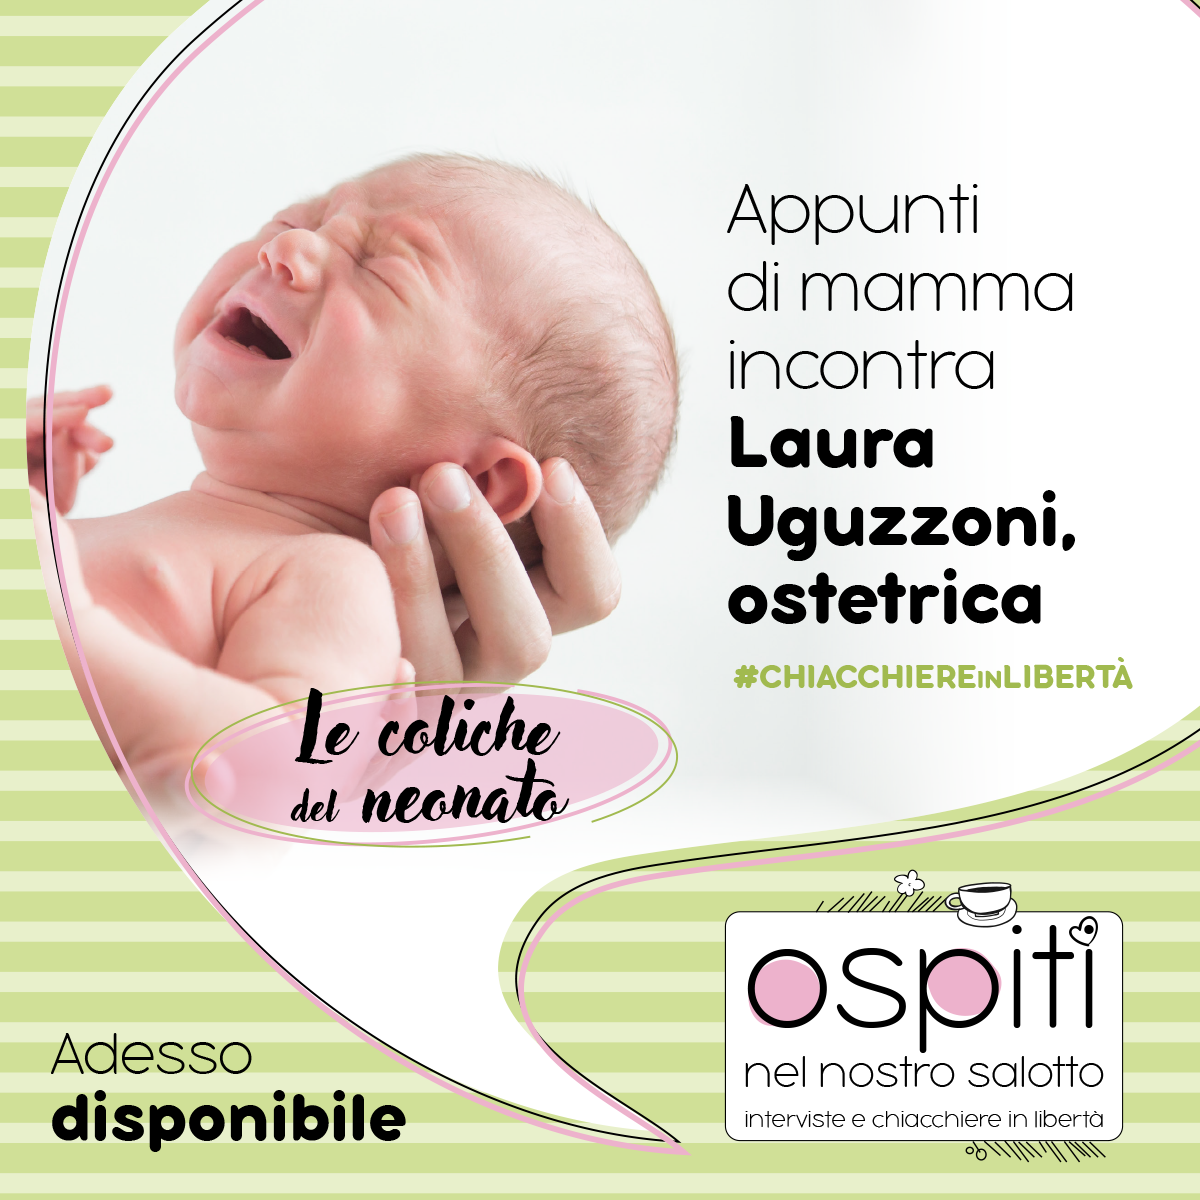 Ostetrica Laura ci parla di coliche del neonato - Appunti di mamma